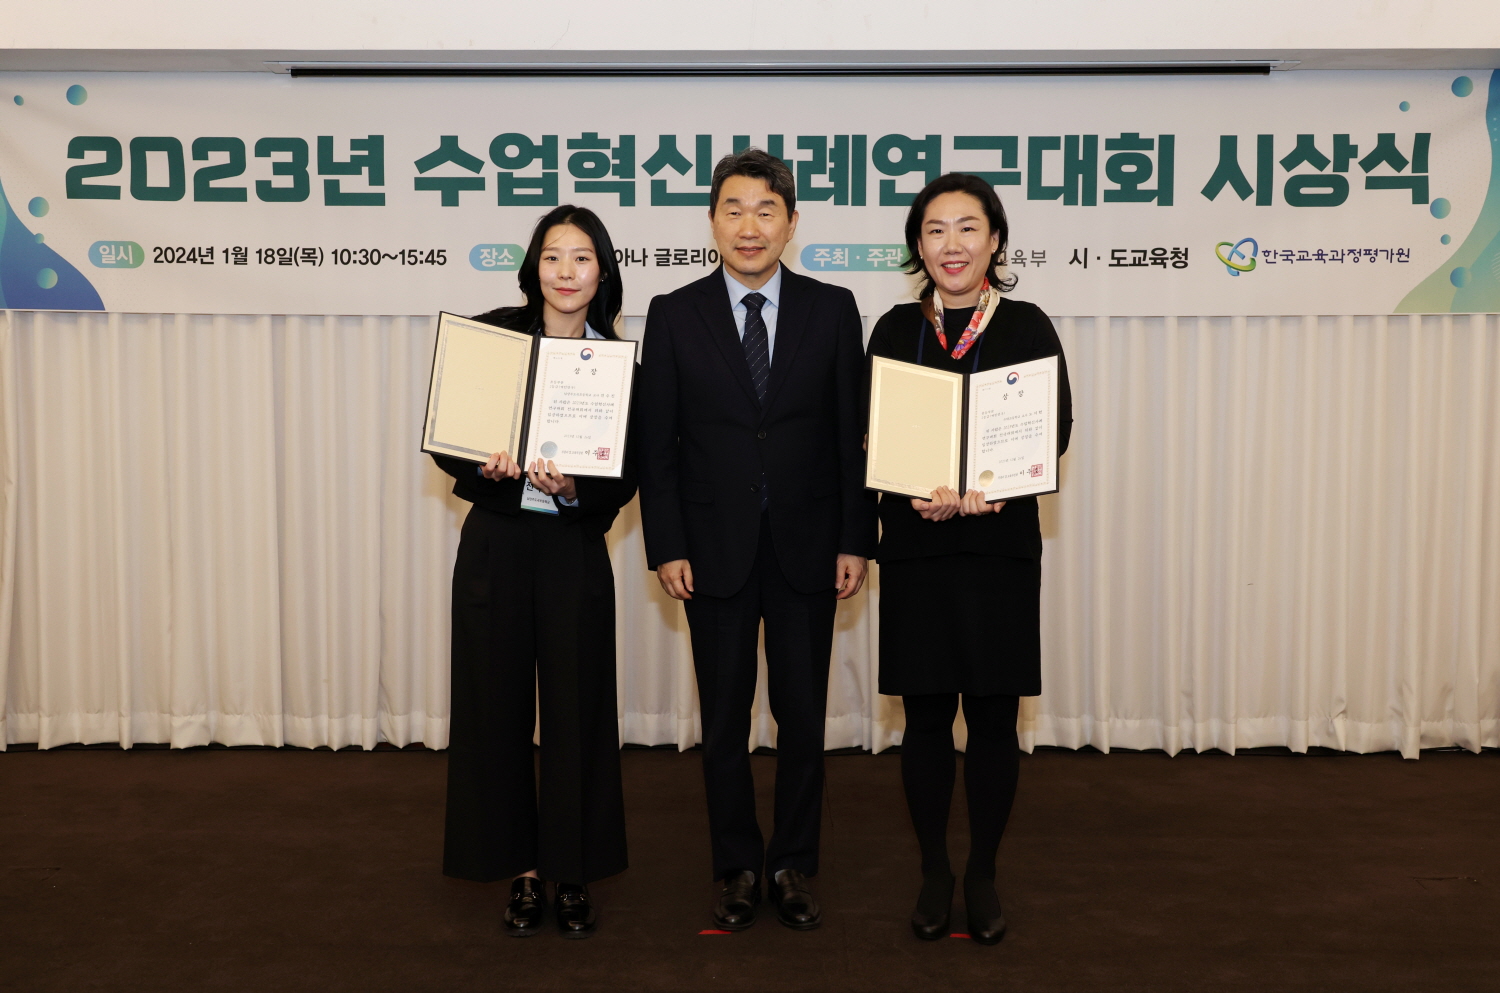 교육부는 1월 18일(목), 서울 코리아나호텔에서 2023년 수업혁신사례연구대회 시상식을 개최했다.